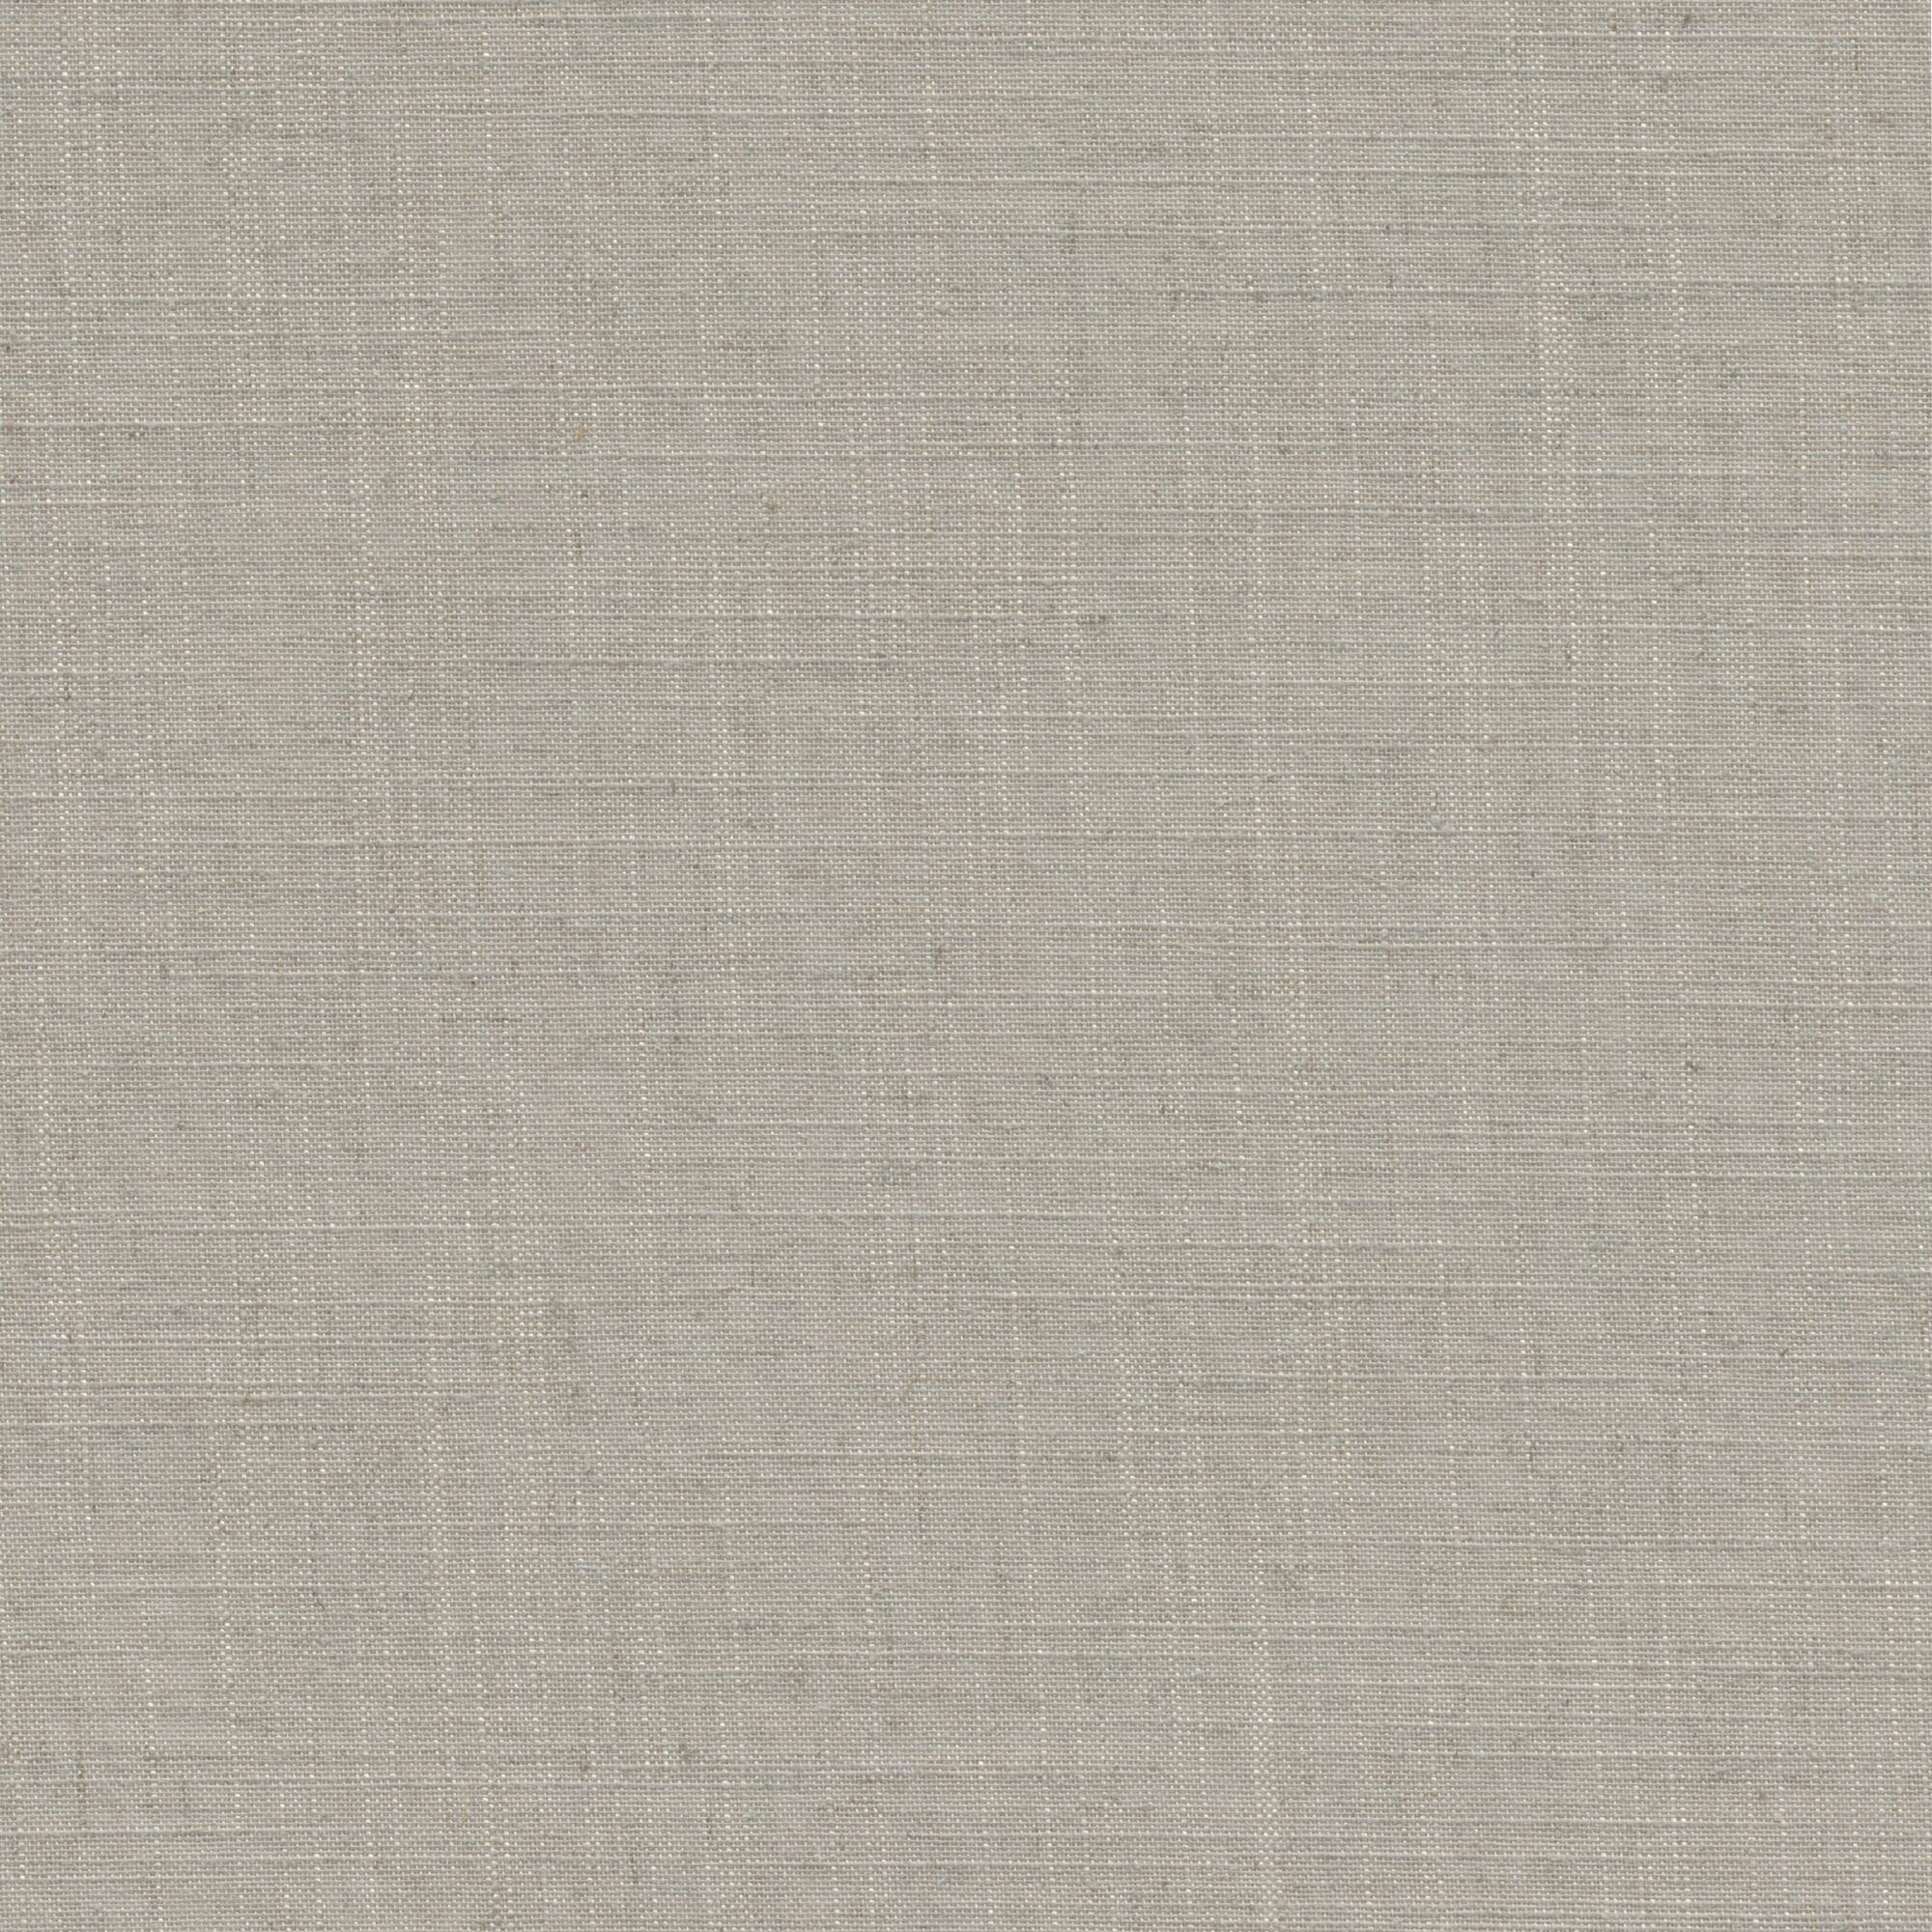 Tessuto per tende a rullo filtrante INSPIRE Brisbane beige 62 x 190 cm - 5